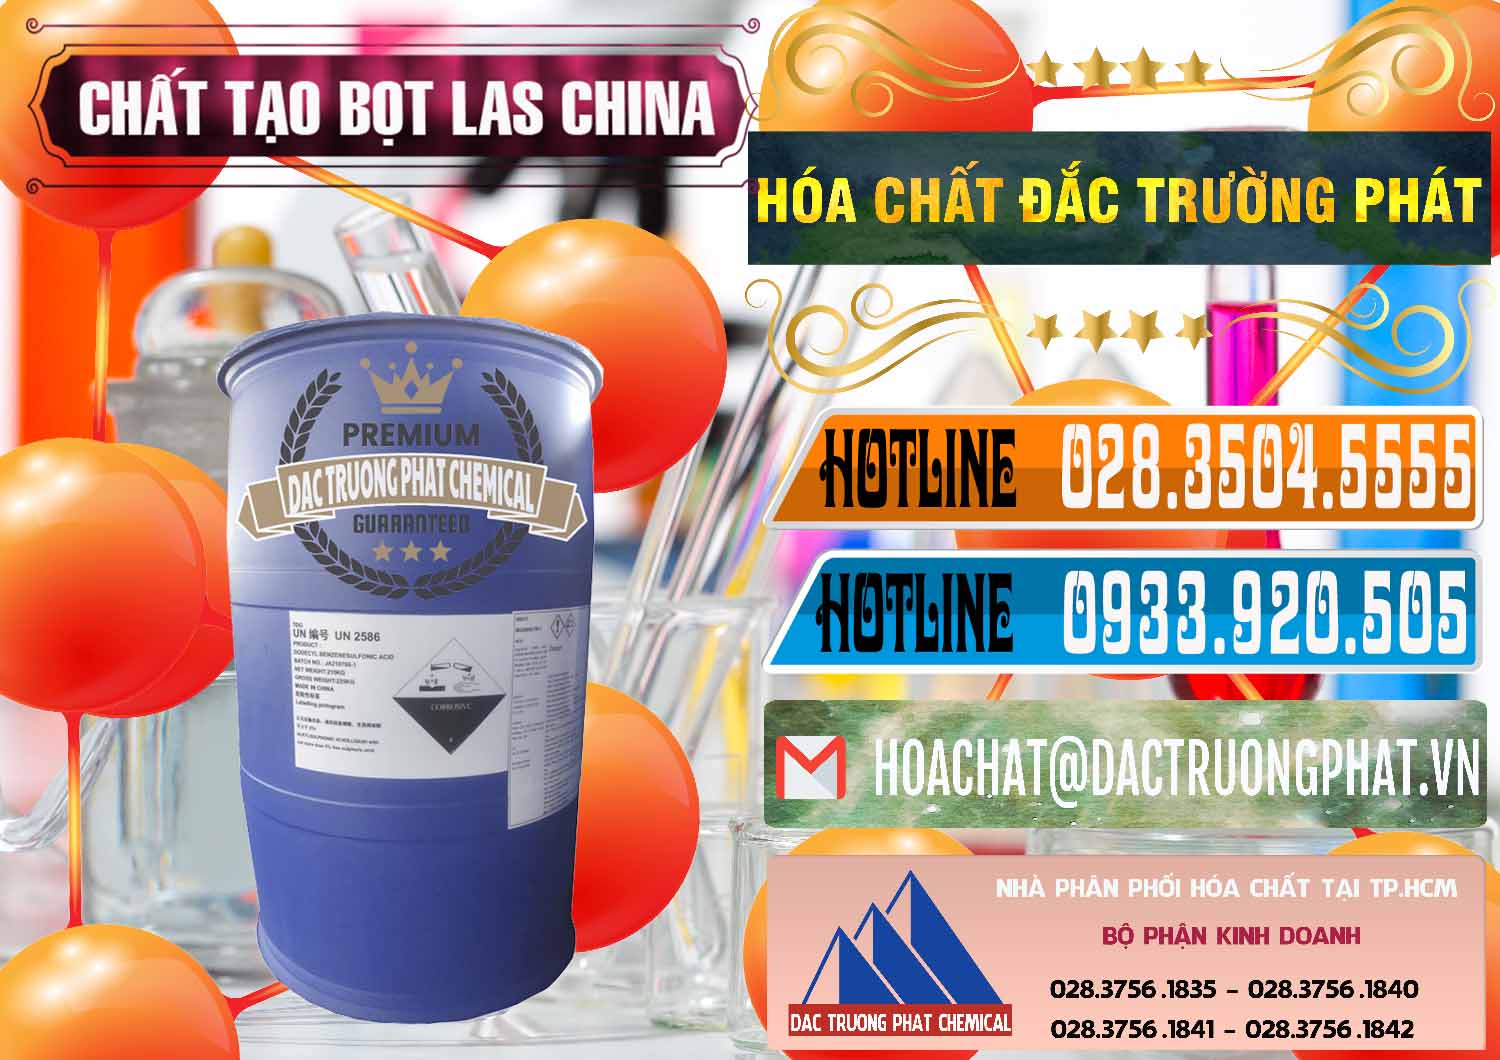 Nơi cung cấp - bán Chất tạo bọt Las Trung Quốc China - 0451 - Cung cấp & bán hóa chất tại TP.HCM - stmp.net